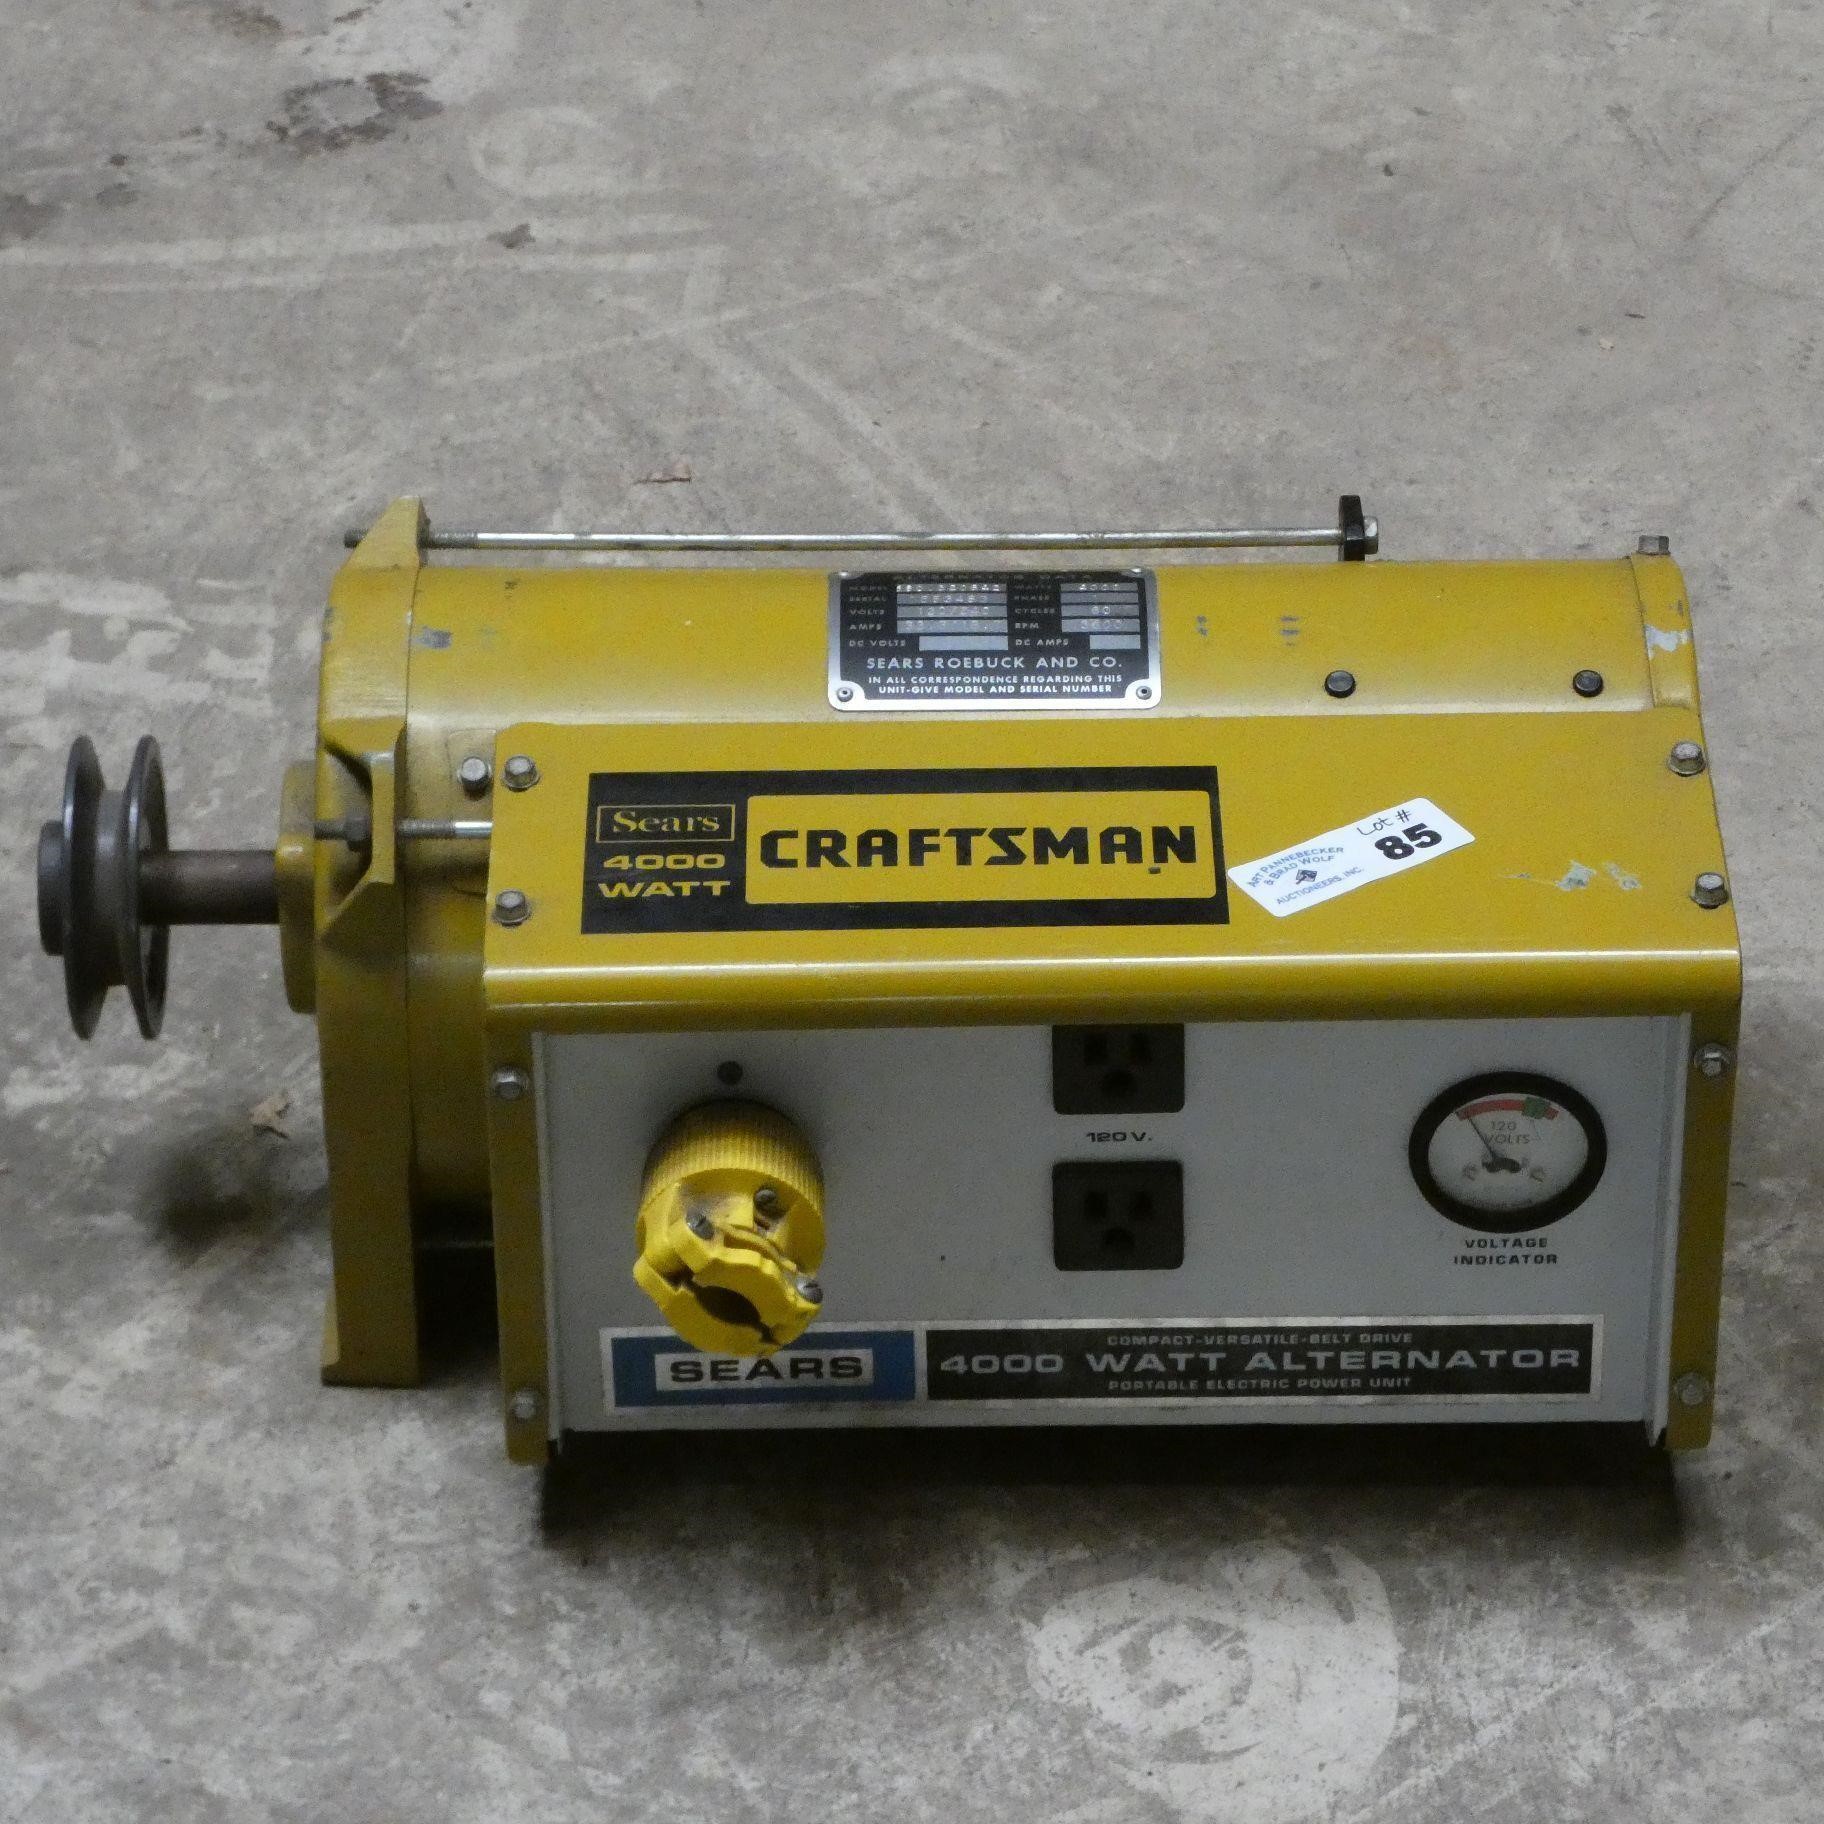 Sears Craftsman 4000 Watt Alternator